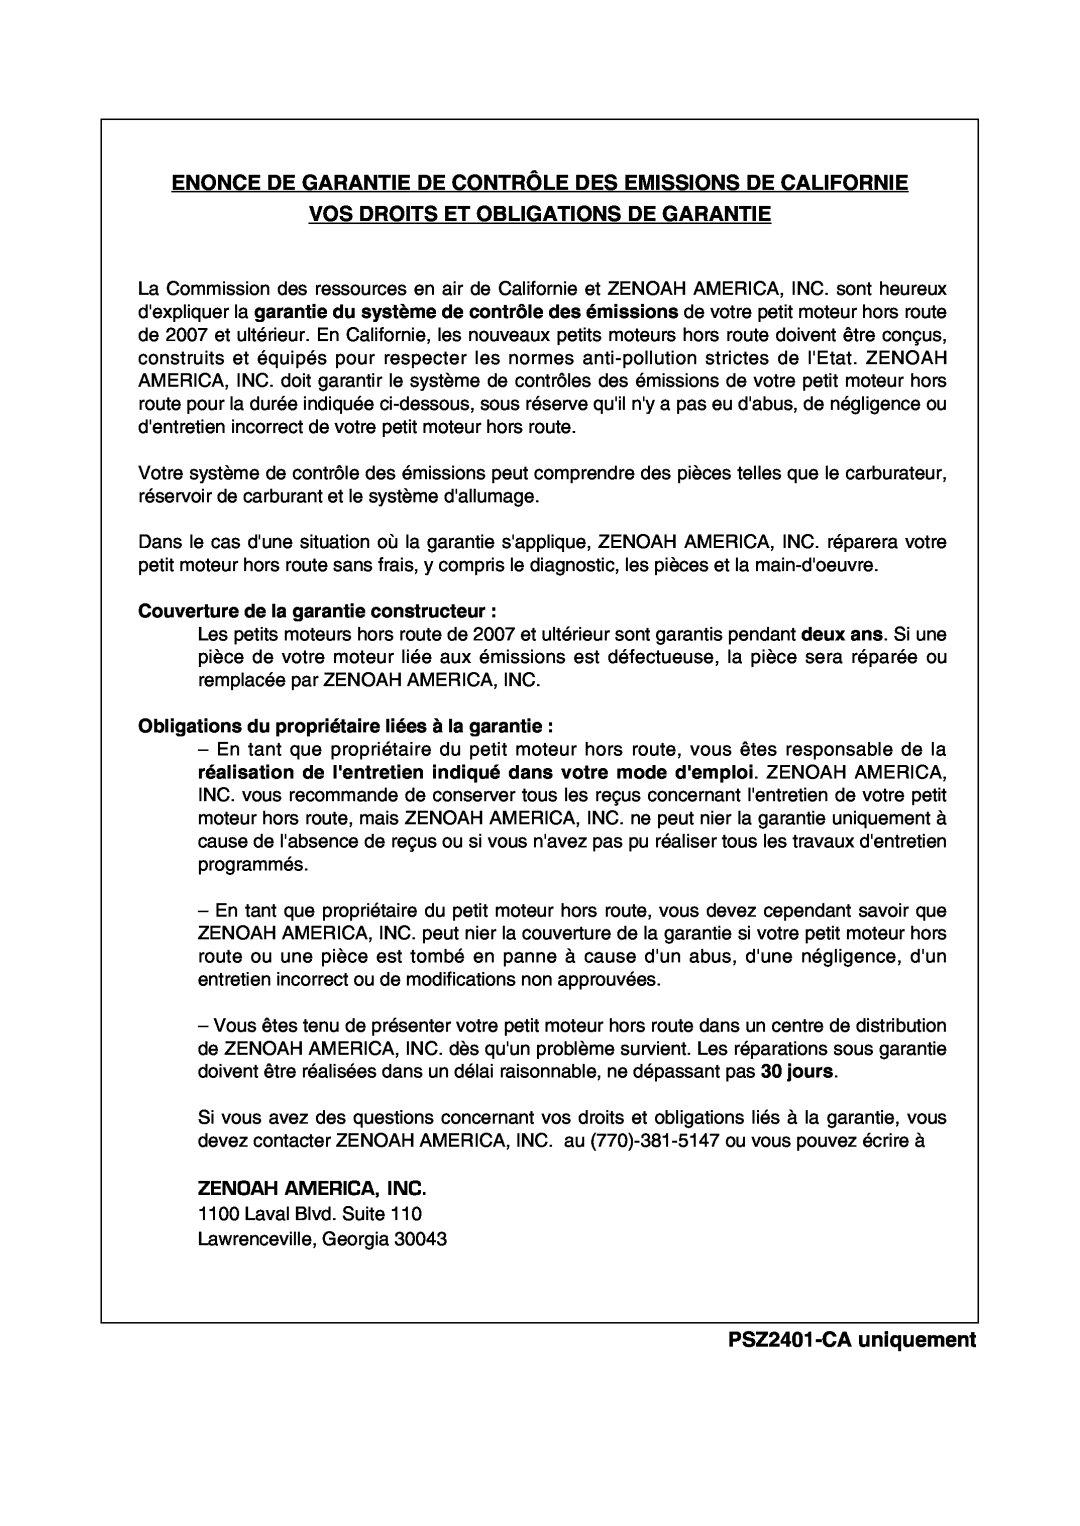 Zenoah PSZ2401 manual Enonce De Garantie De Contrôle Des Emissions De Californie, Vos Droits Et Obligations De Garantie 